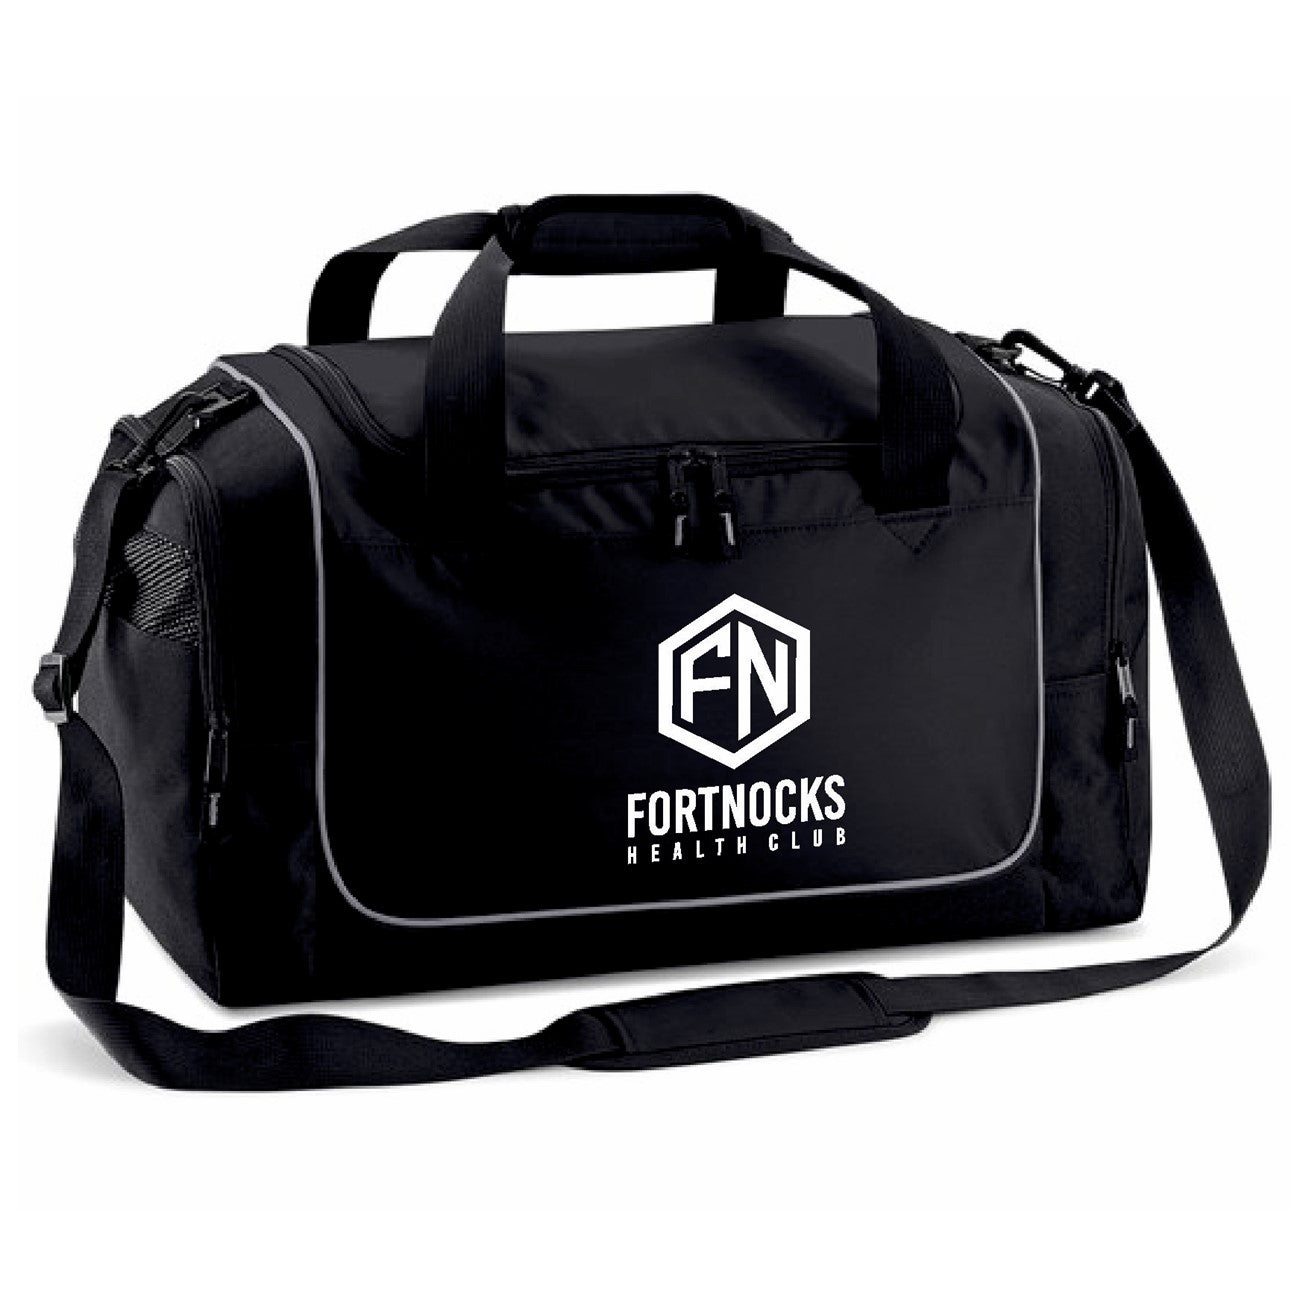 Fortnocks Gym Bag